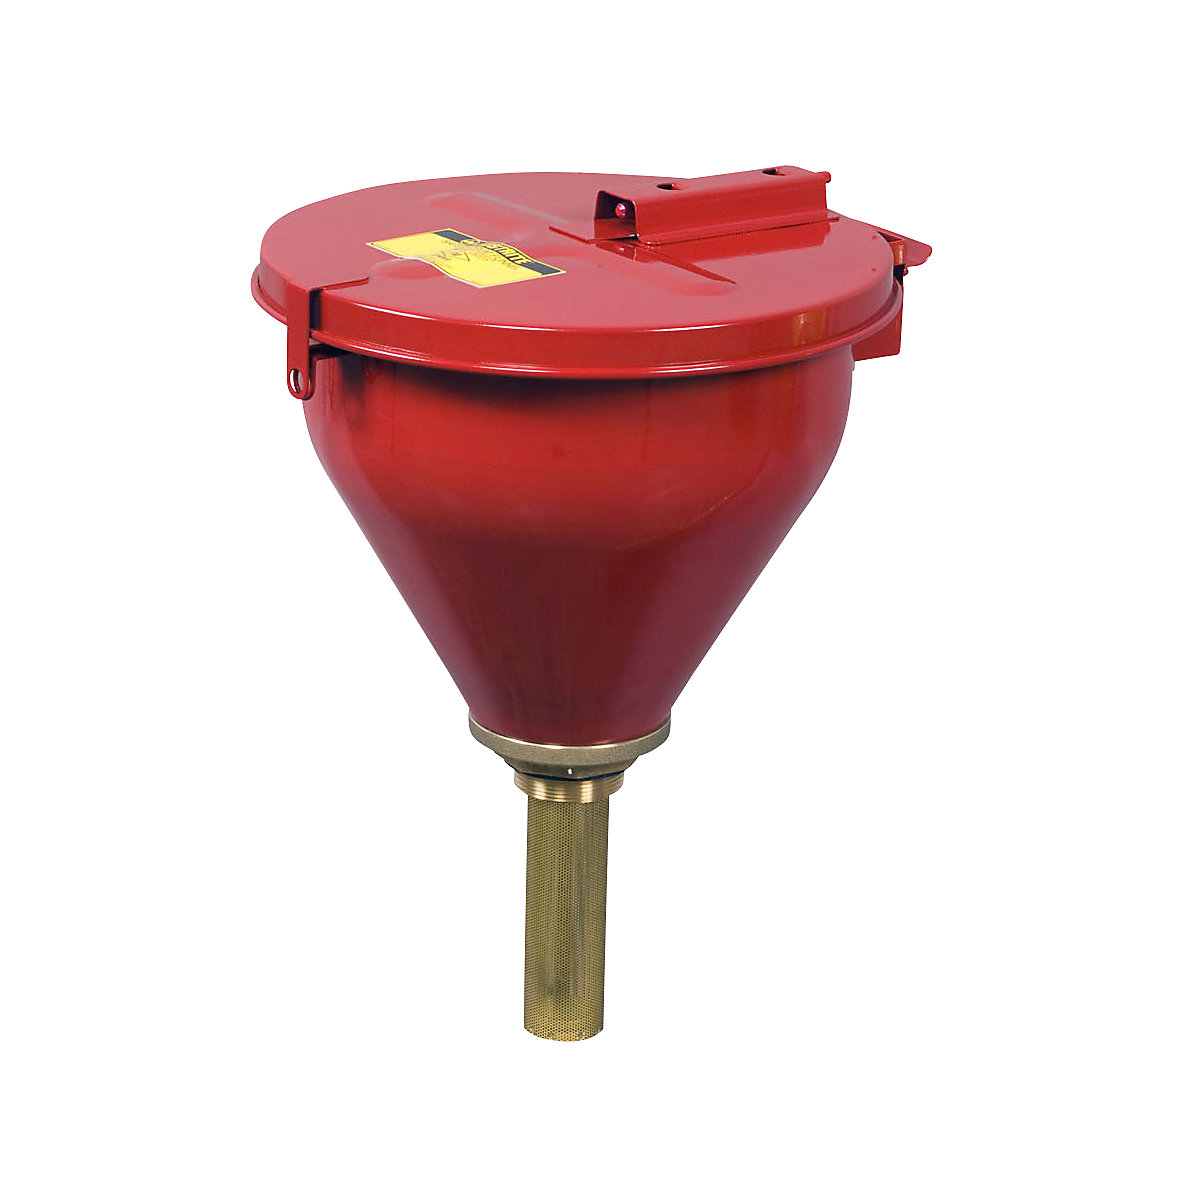 Justrite – Bezpieczny lejek do beczek, wys. x Ø 254 x 273 mm, blacha stalowa, ocynkowany i lakierowany proszkowo na kolor czerwony